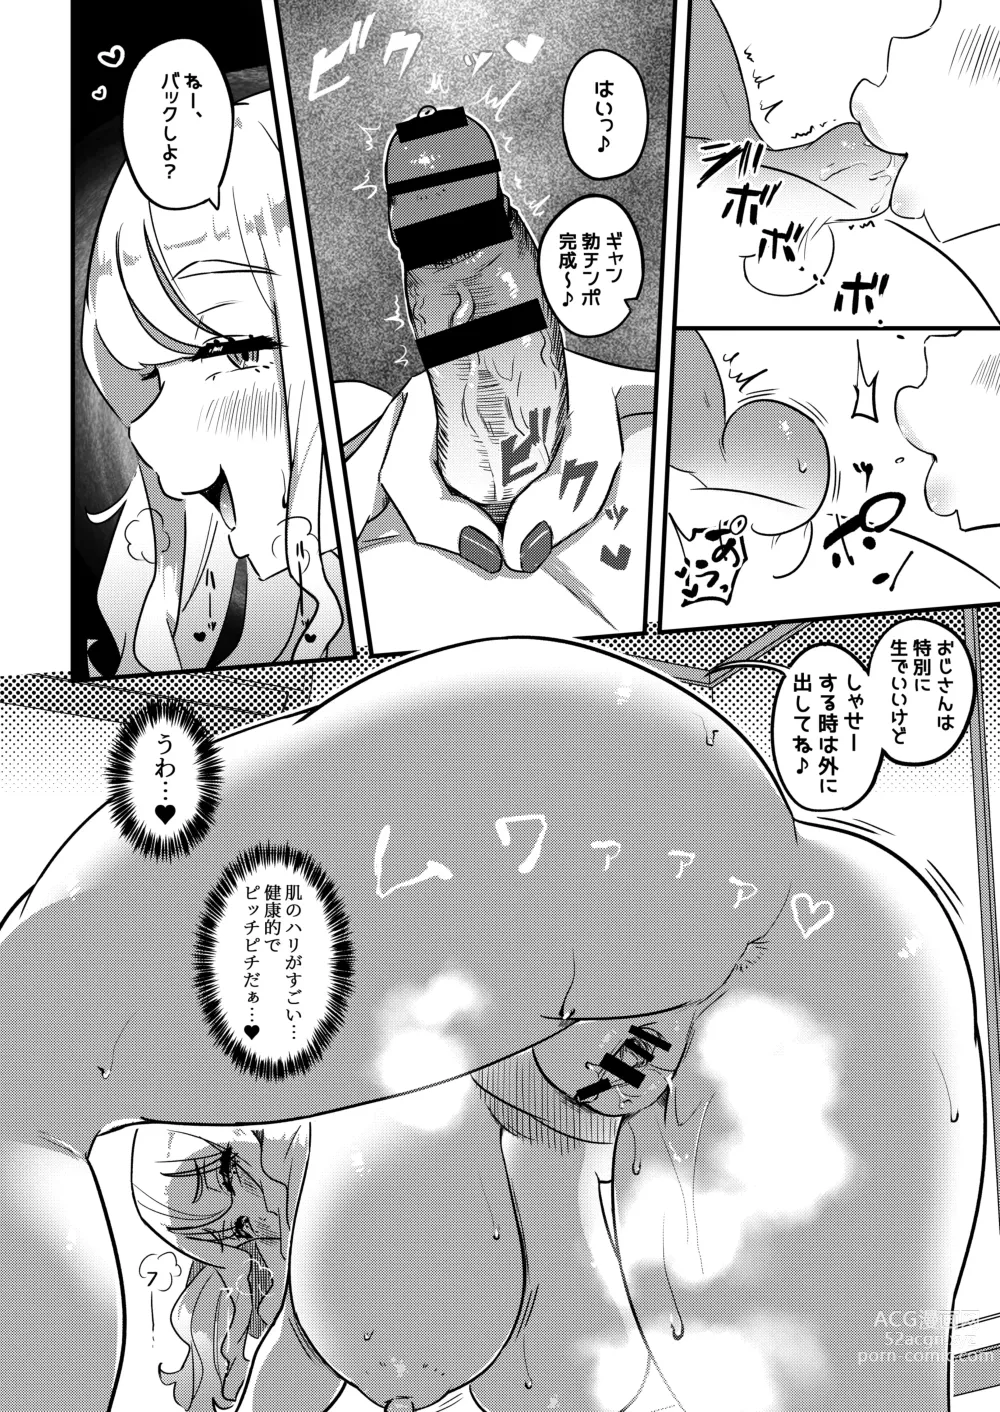 Page 21 of doujinshi Muchimuchi Warikiri JK